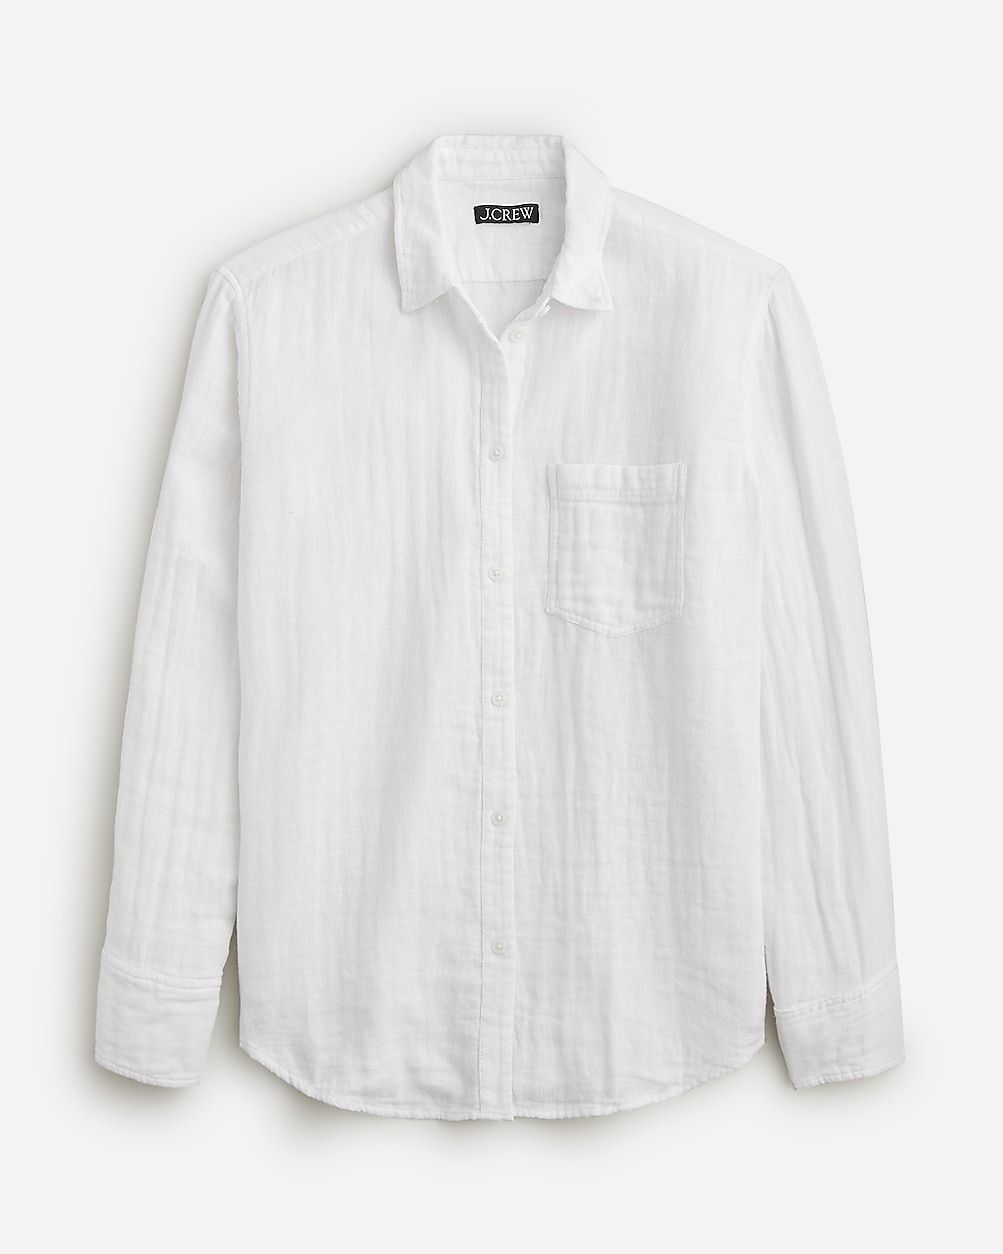 Garçon classic shirt in cotton-linen blend gauze | J.Crew US